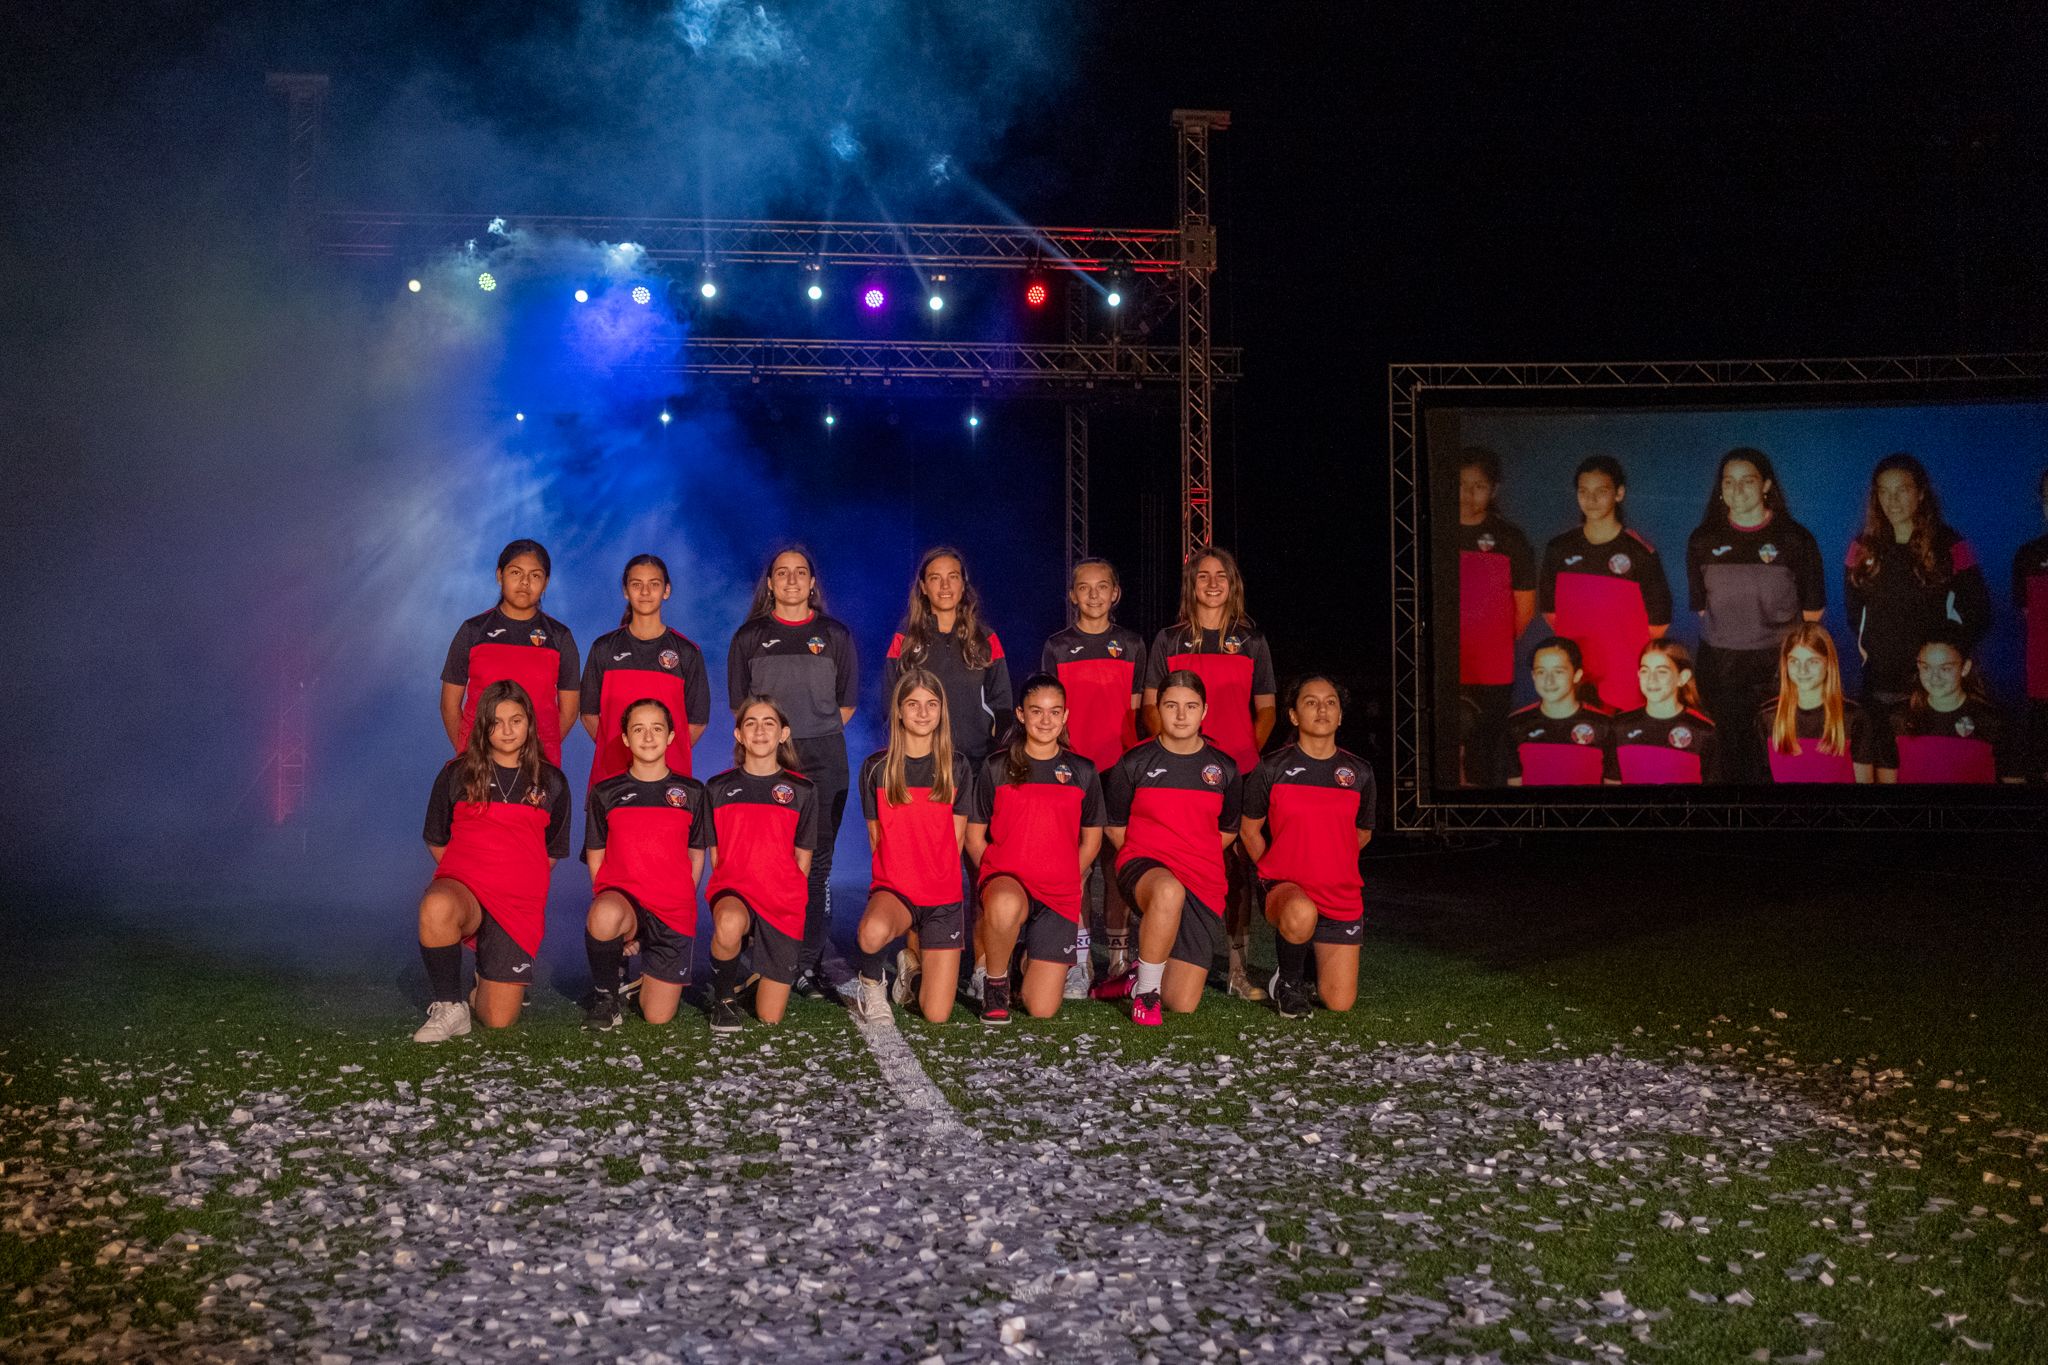 Presentació d'equips del Sant Cugat FC. FOTO: Ale Gómez